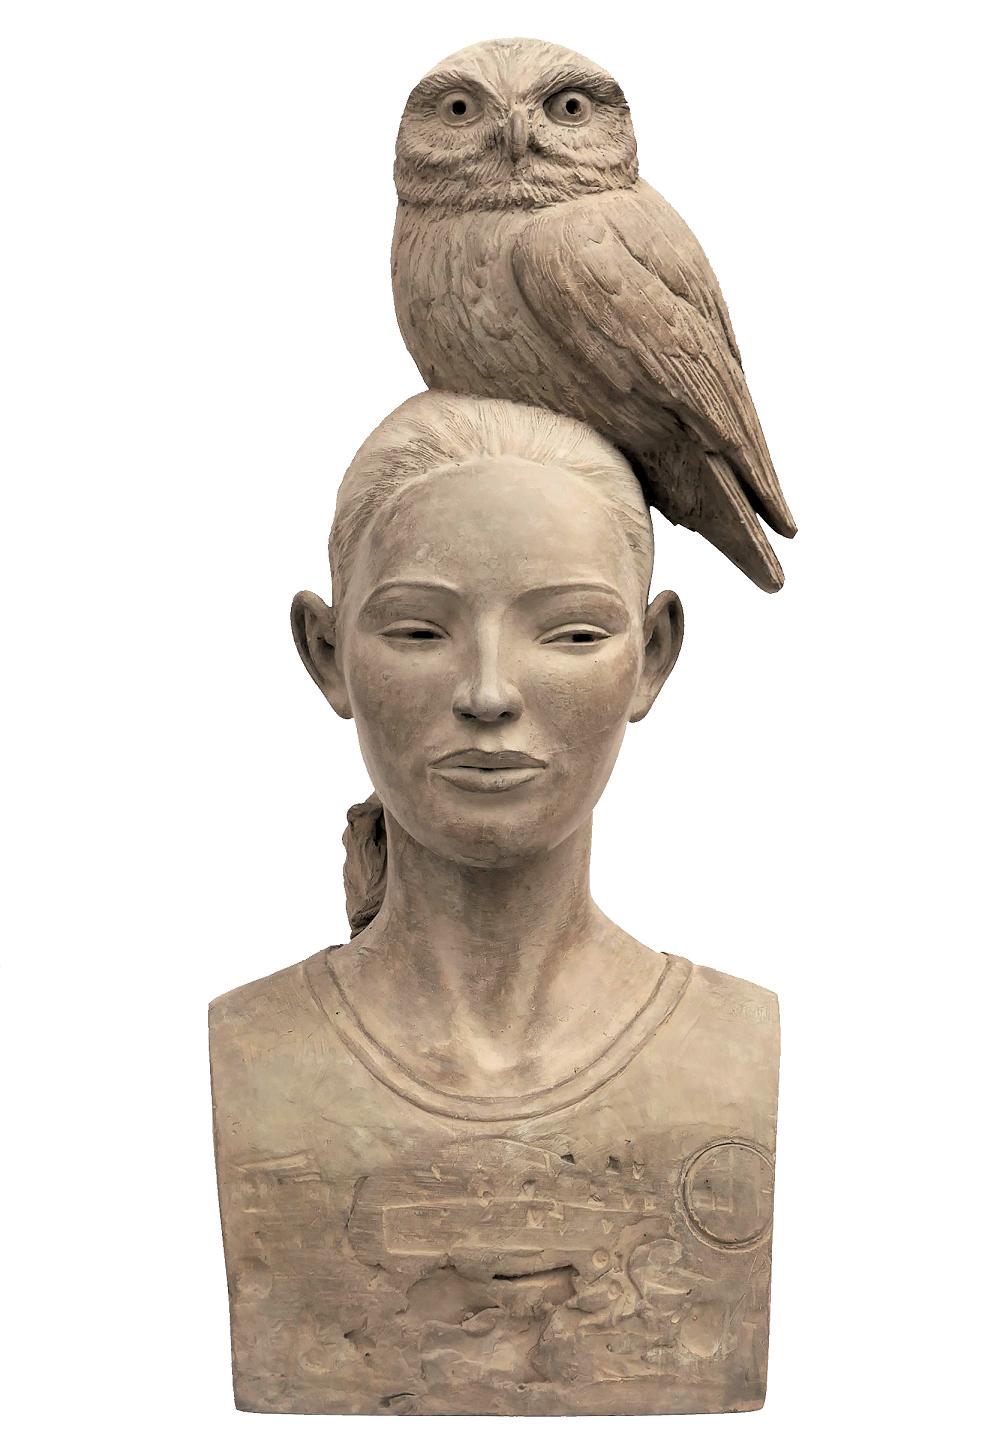 Erwin Meijer Nude Sculpture - Vrouw met Uil Owl Bronze Sculpture Girl with Owl on Head Wisdom In Stock 